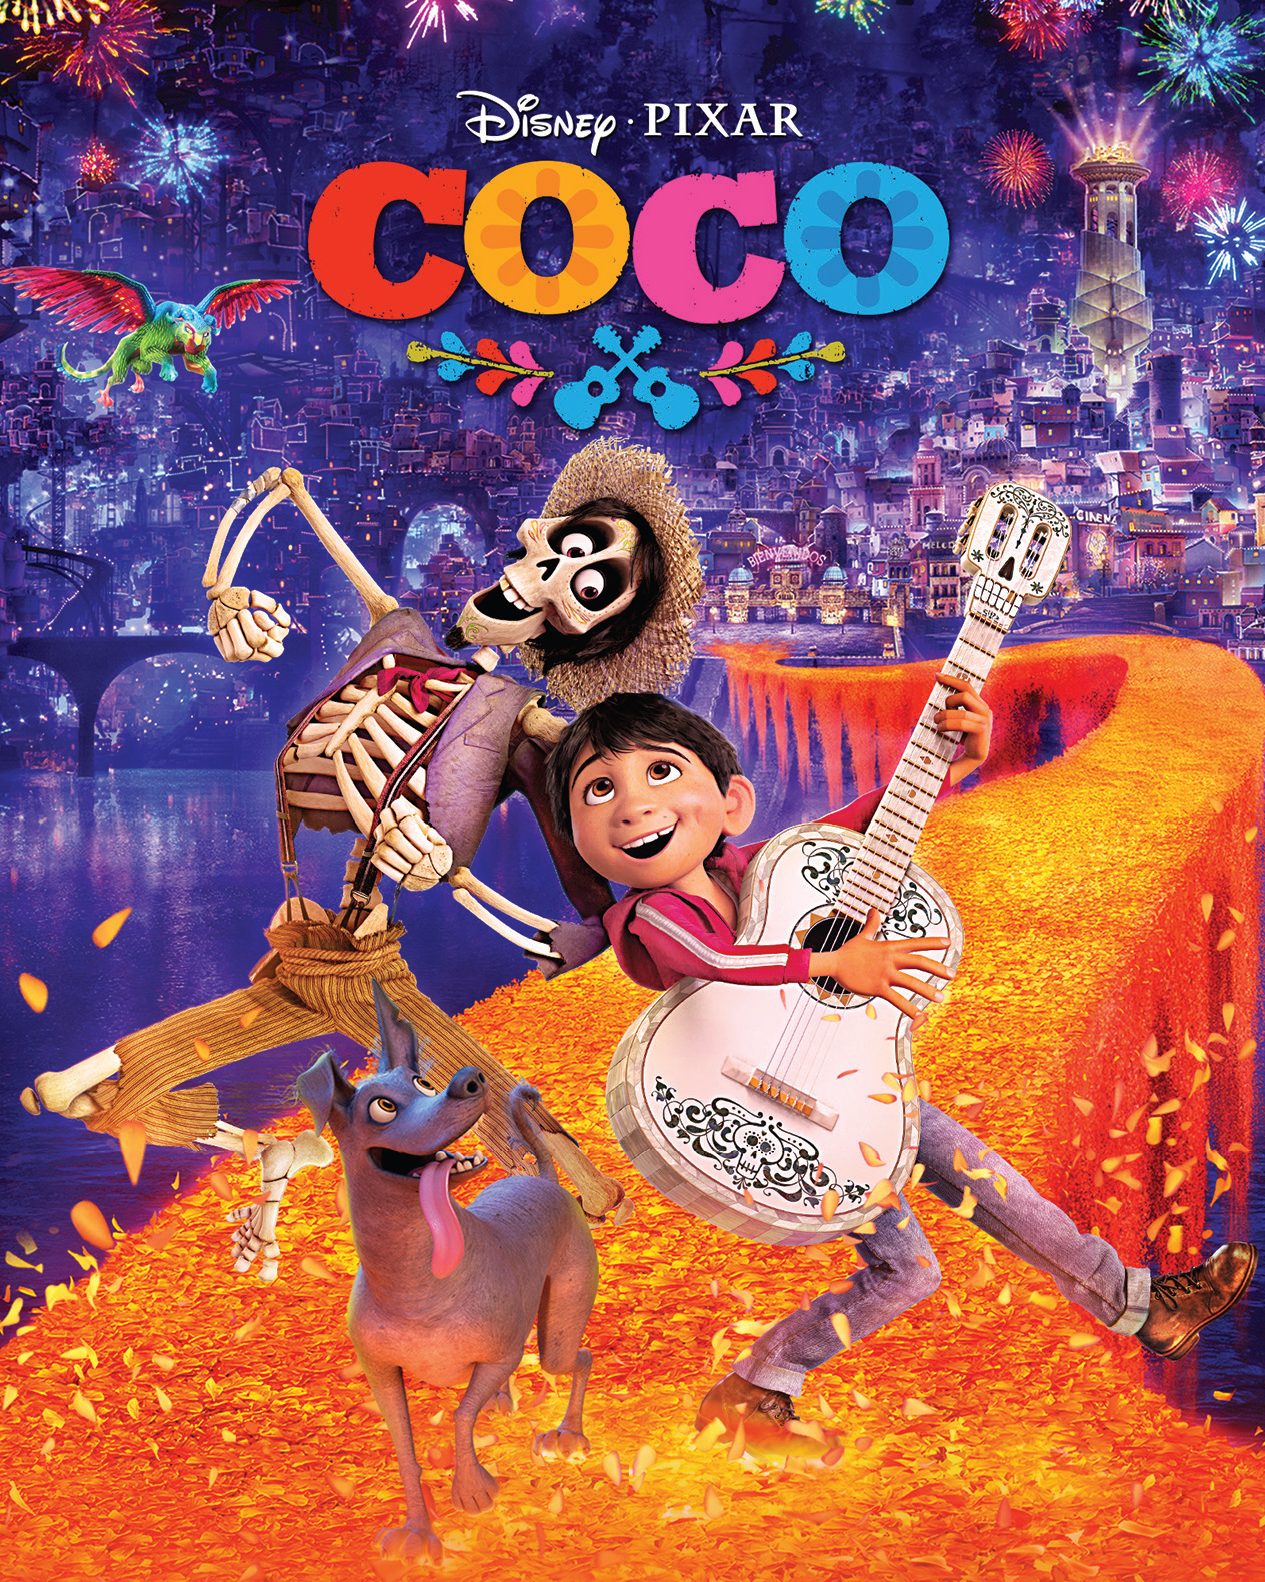 Cine de Verano en La Unión de Hortaleza: Coco